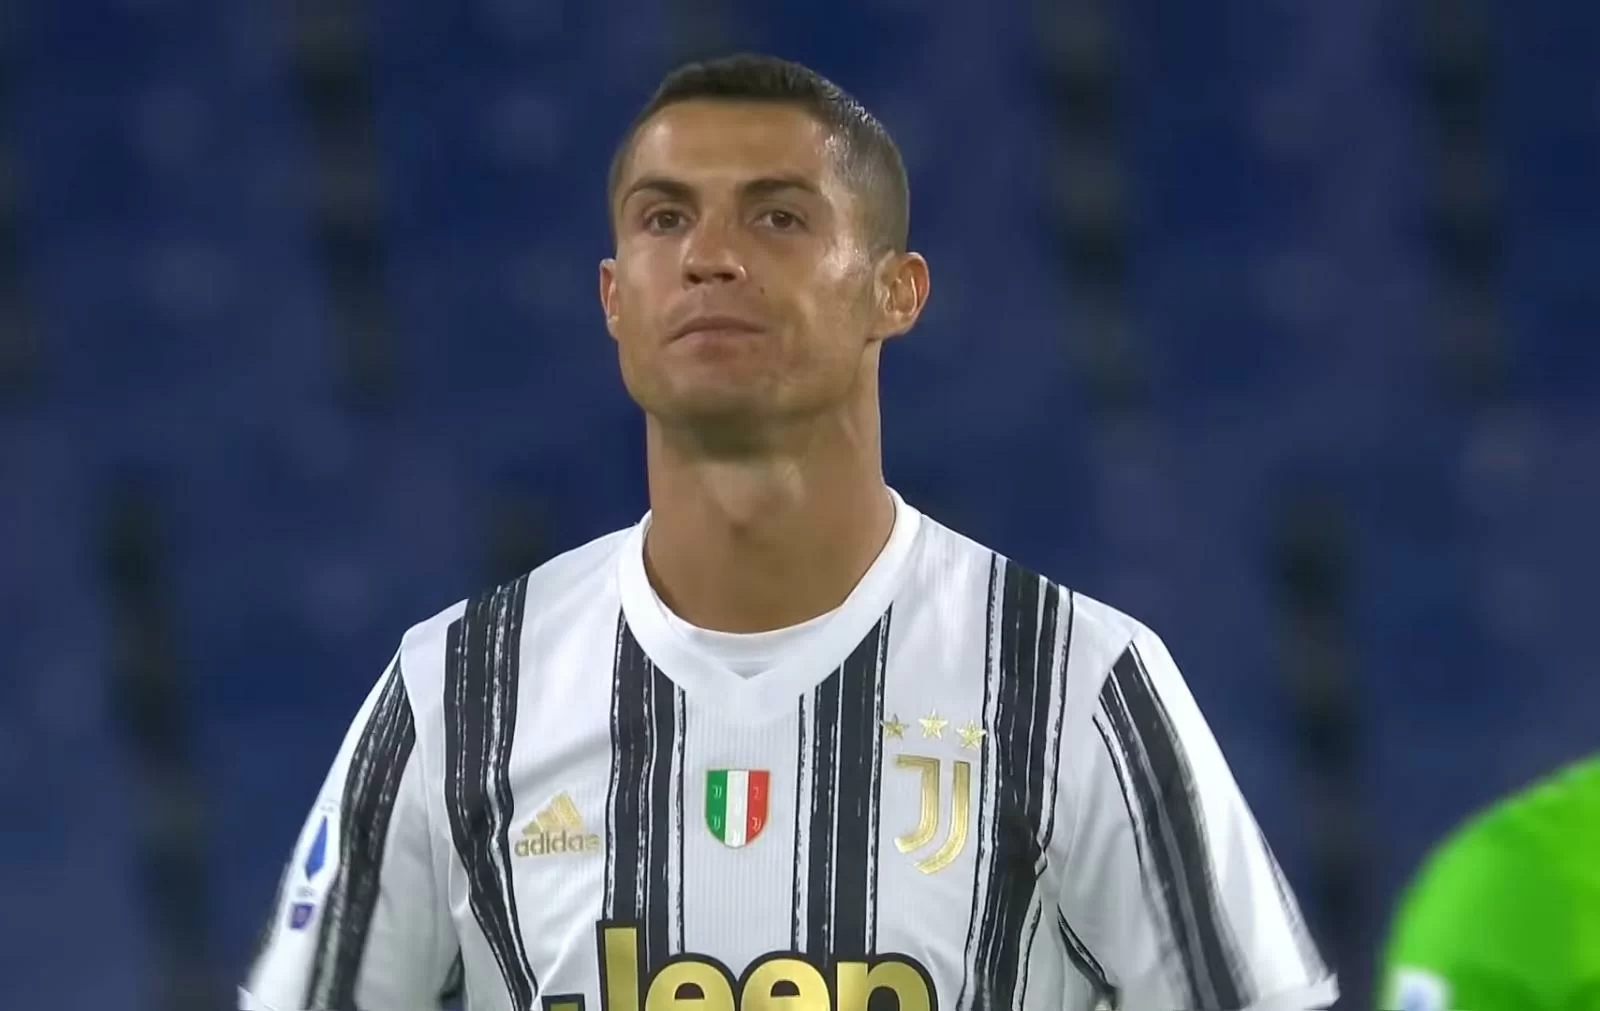 CorSport – Accusa di stupro per Cristiano Ronaldo, possibile riapertura delle indagini: cosa rischia il portoghese